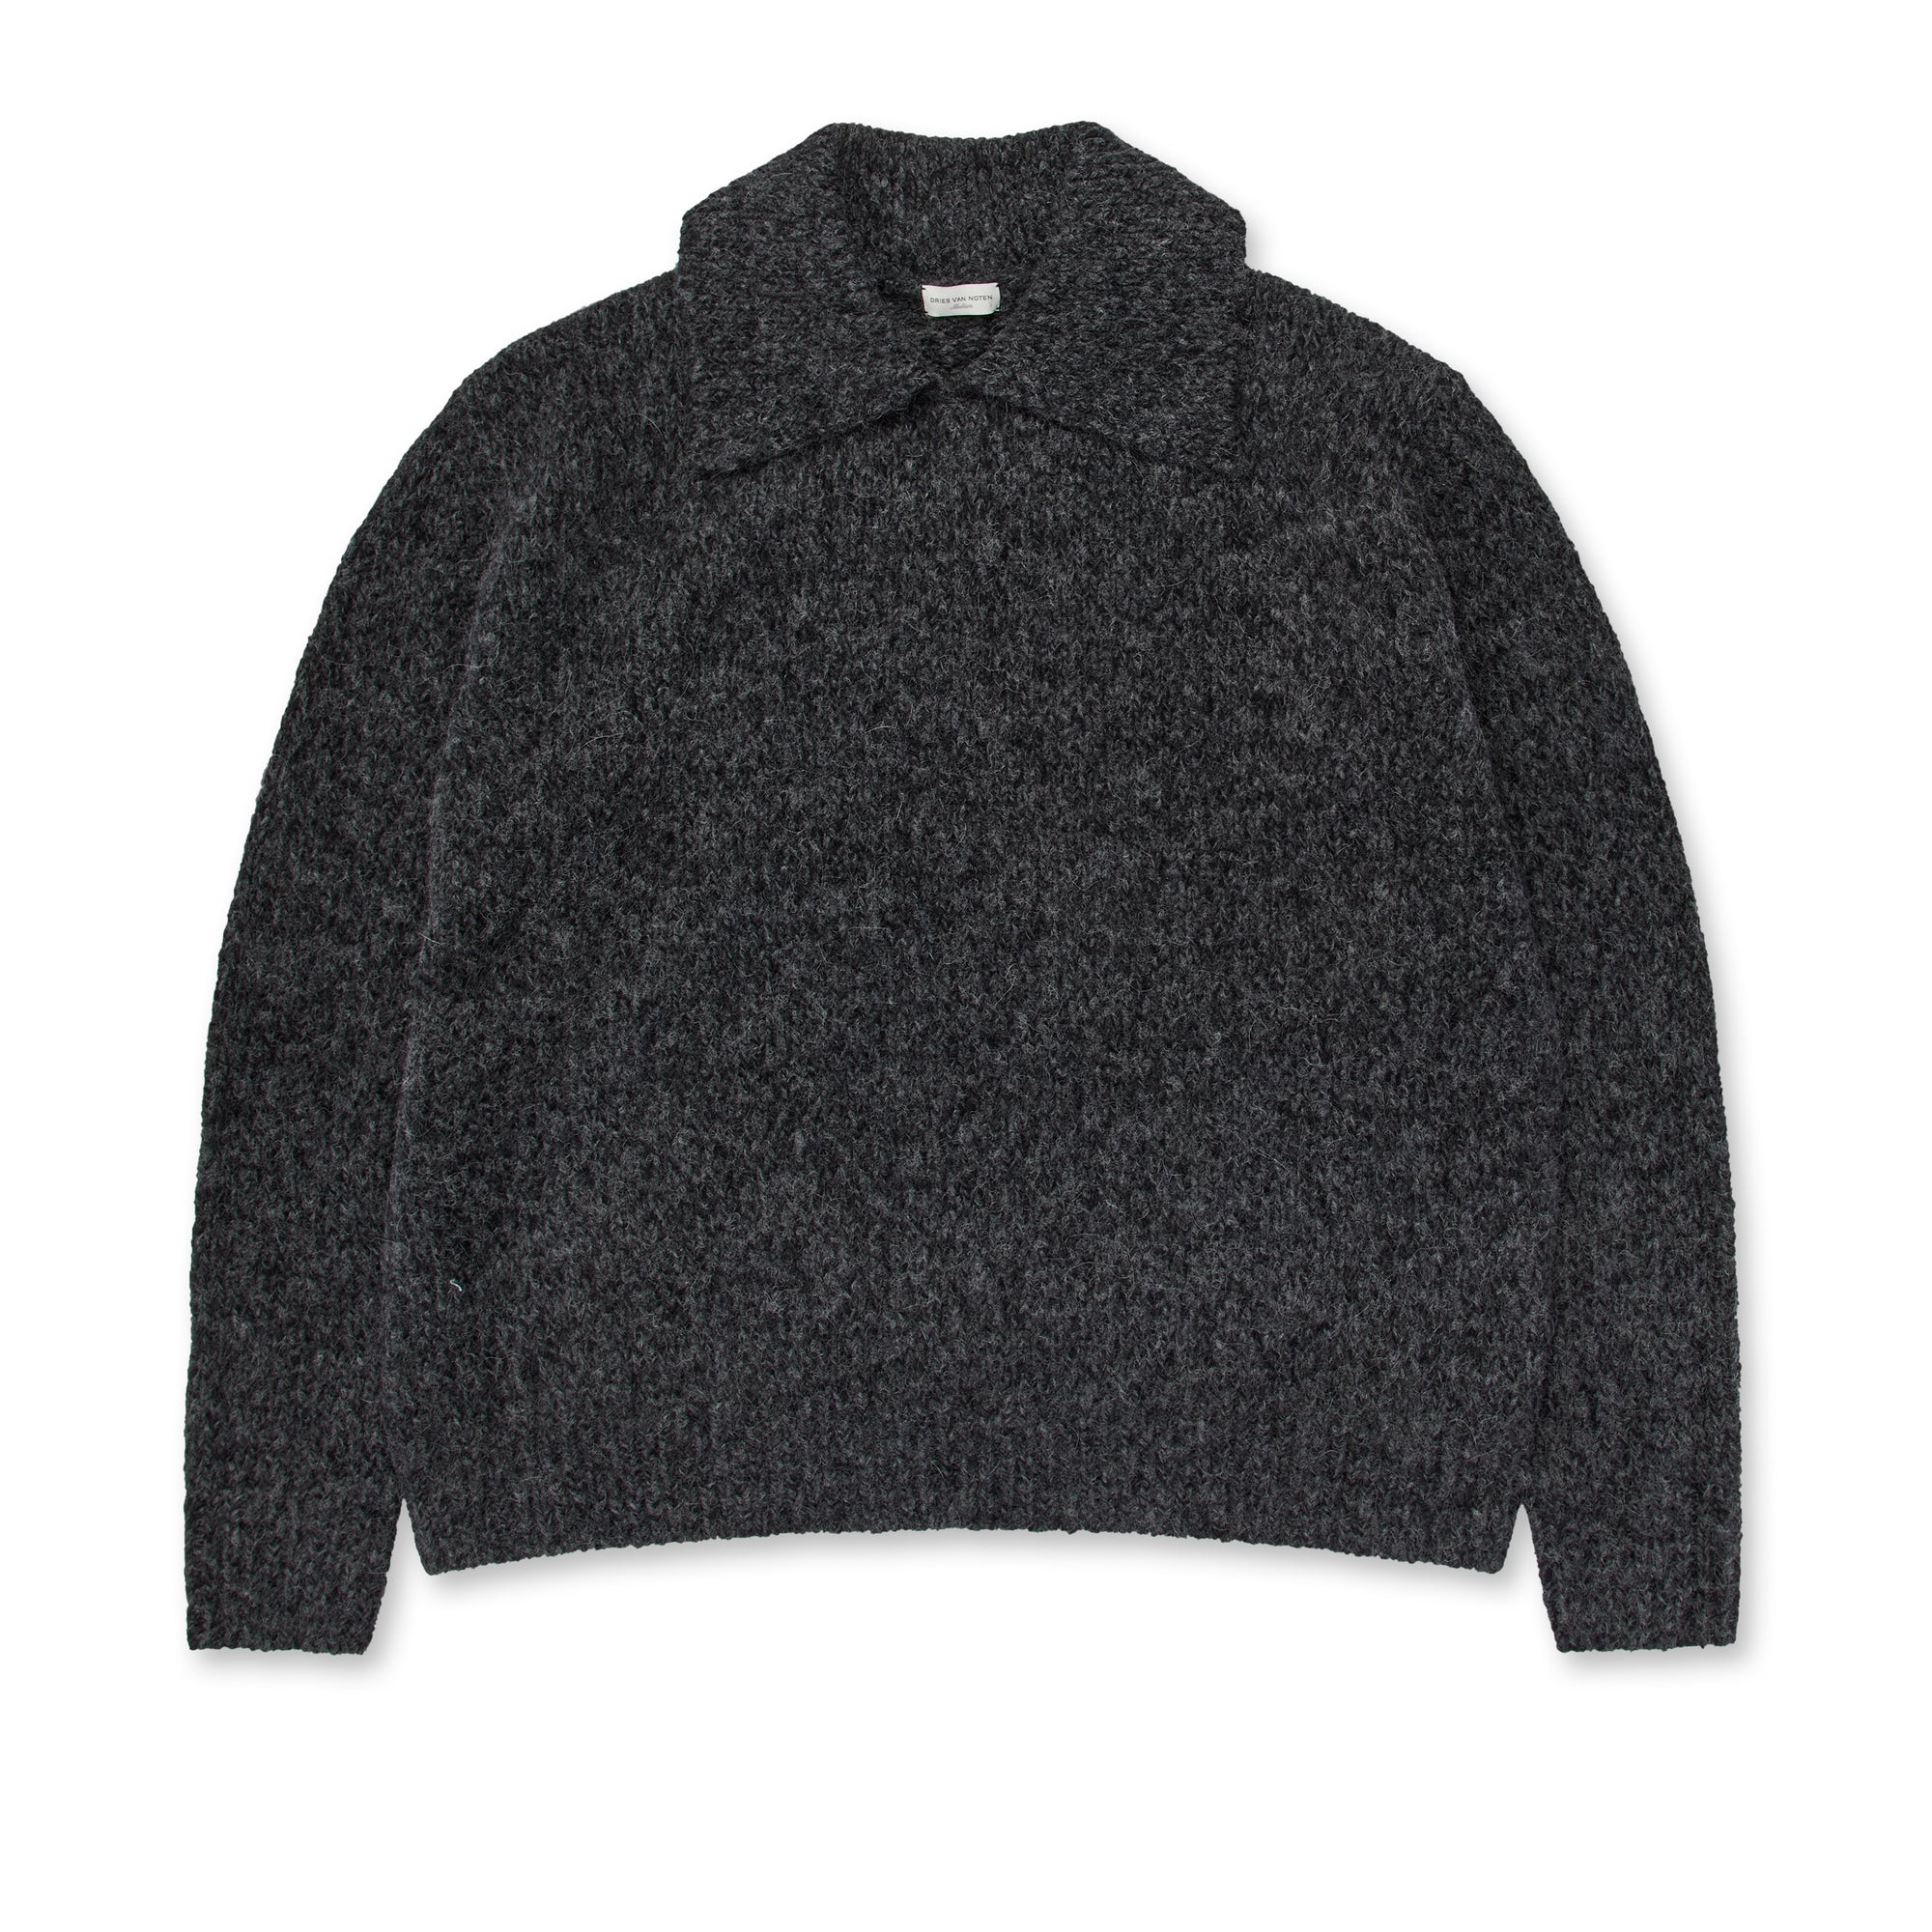 Dries Van Noten - Men’s Collared Sweater - (Grey) view 1